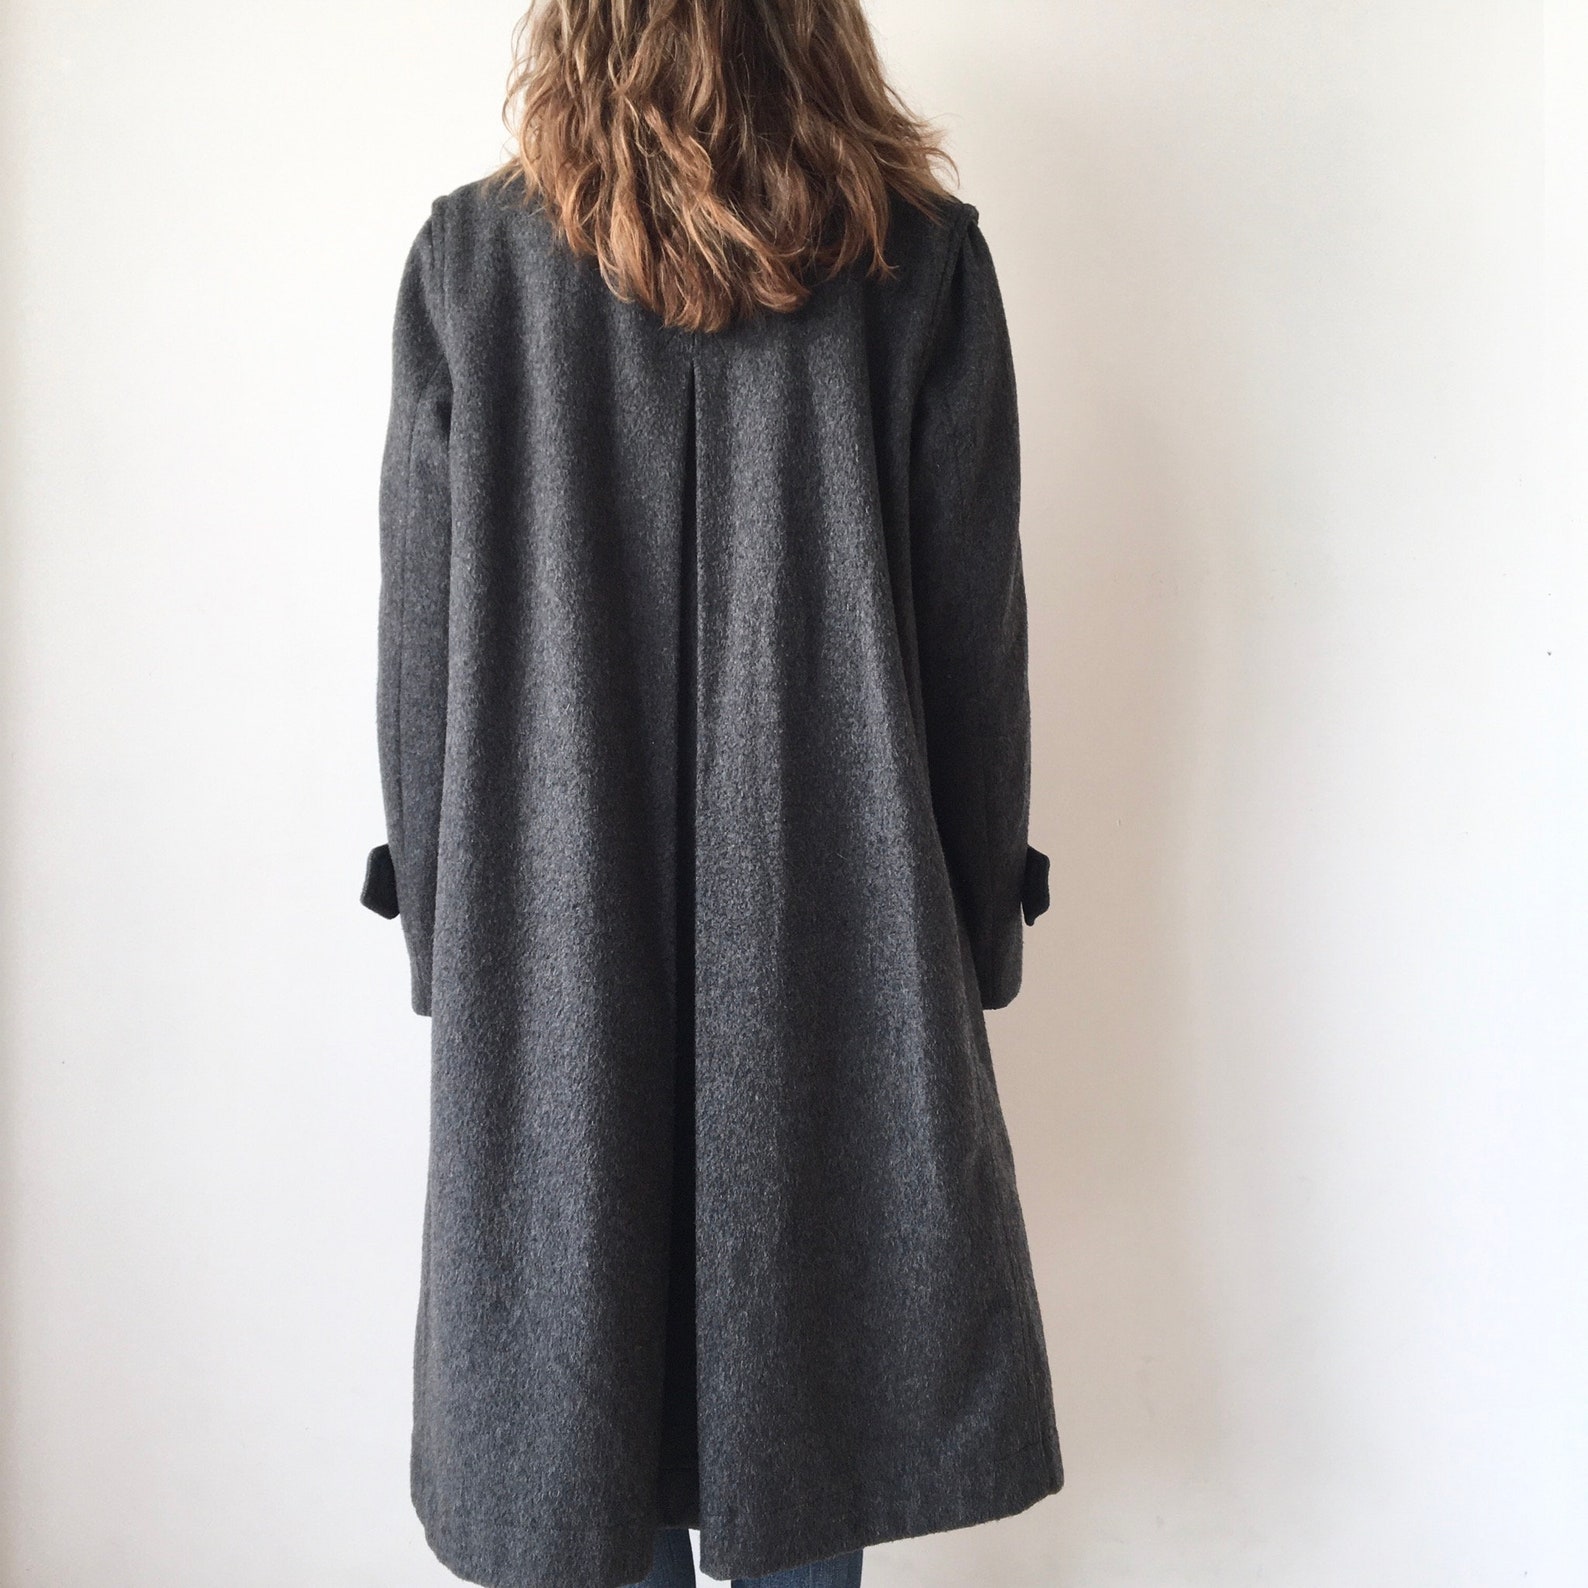 Vintage 100% wool duster shoulder long grey coat for women | Etsy